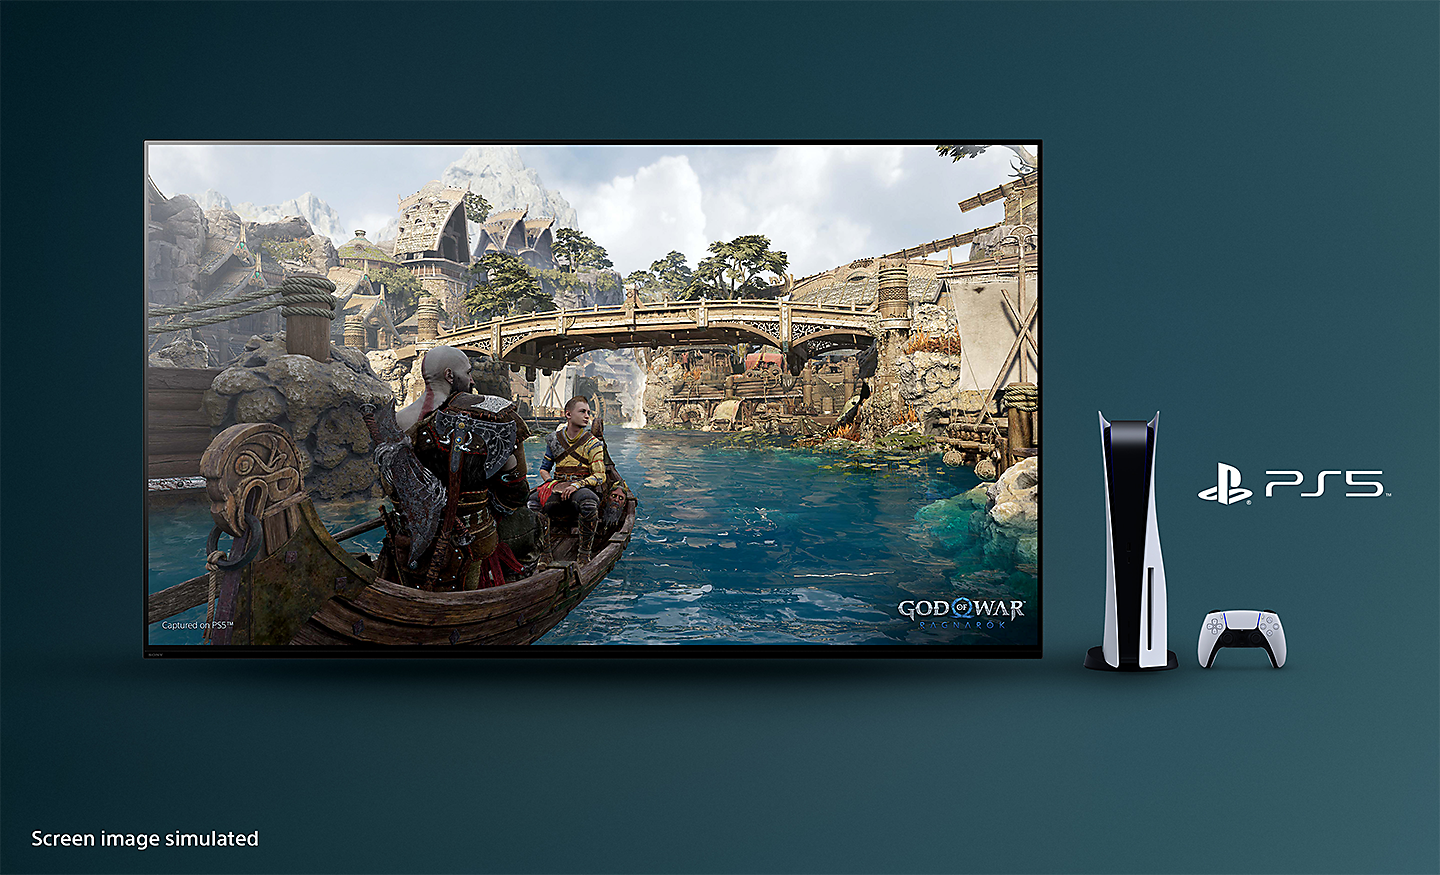 TV BRAVIA avec capture d'écran de God of War: Ragnarok montrant un bateau sur une rivière avec un pont en arrière-plan, avec la console PS5™, une manette et le logo PS5™ à droite du téléviseur